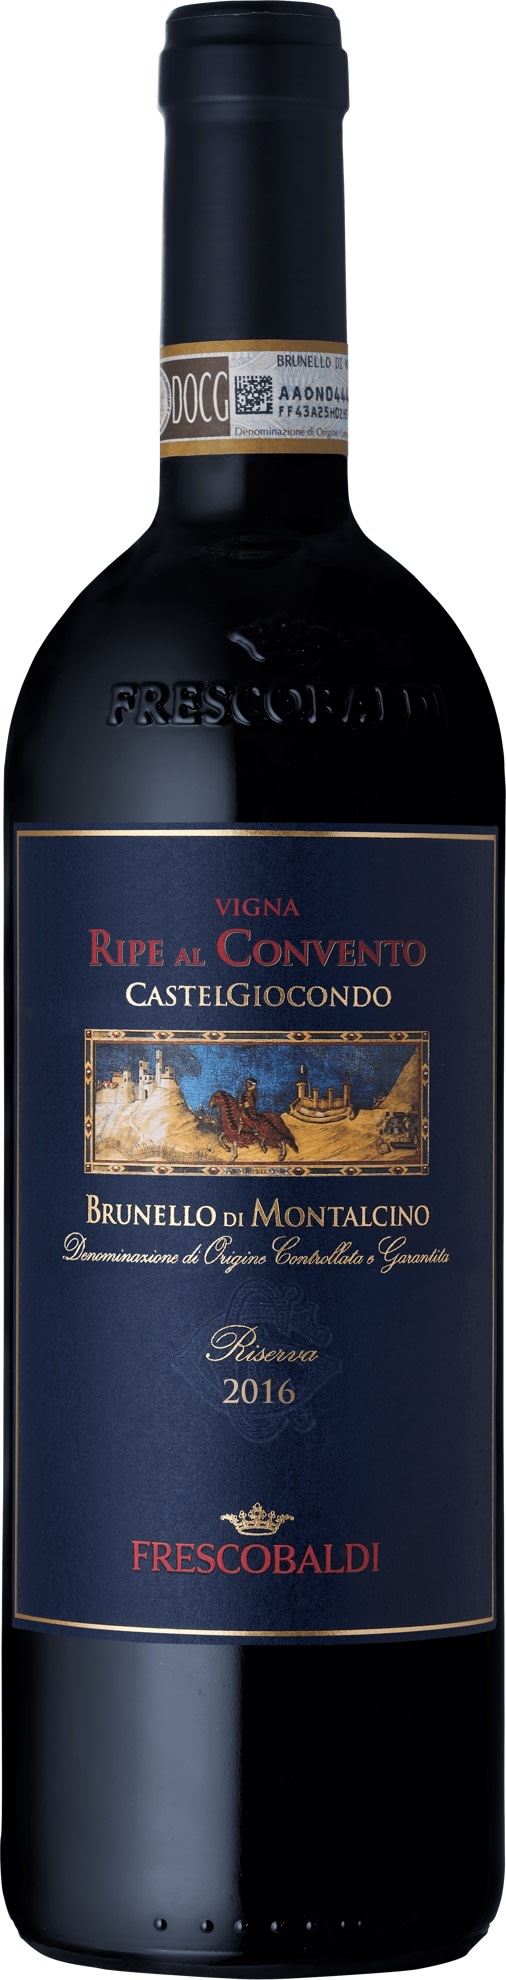 Frescobaldi Castelgiocondo Brunello di Montalcino Riserva DOCG 2016 6x75cl - Just Wines 